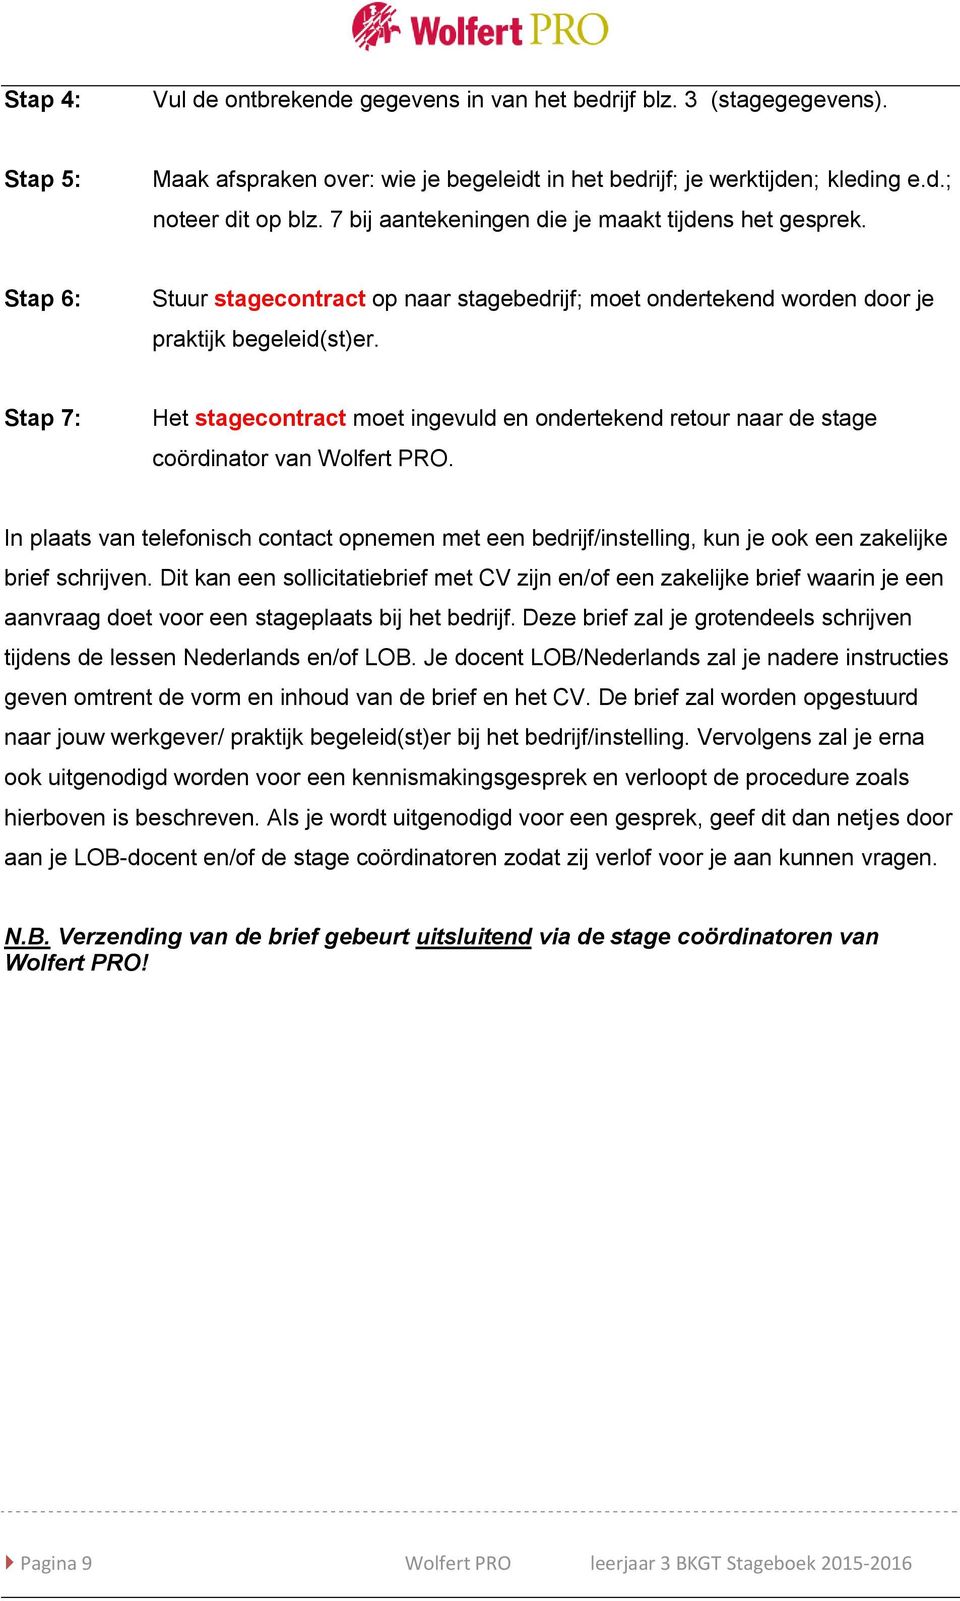 Stap 7: Het stagecontract moet ingevuld en ondertekend retour naar de stage coördinator van Wolfert PRO.